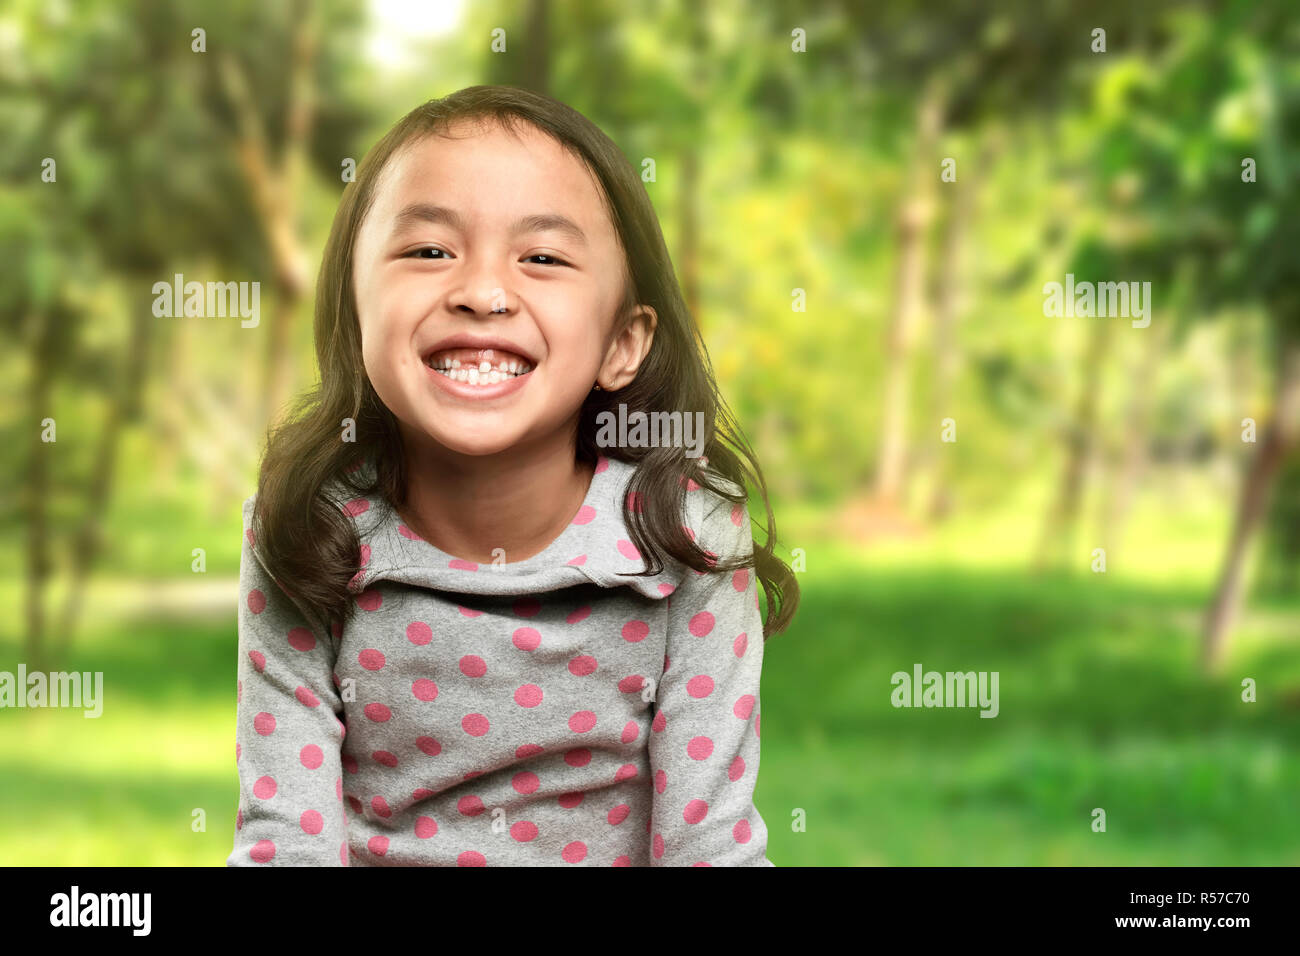 Drôle de sourire petite fille asiatique avec sa dent cassée Banque D'Images